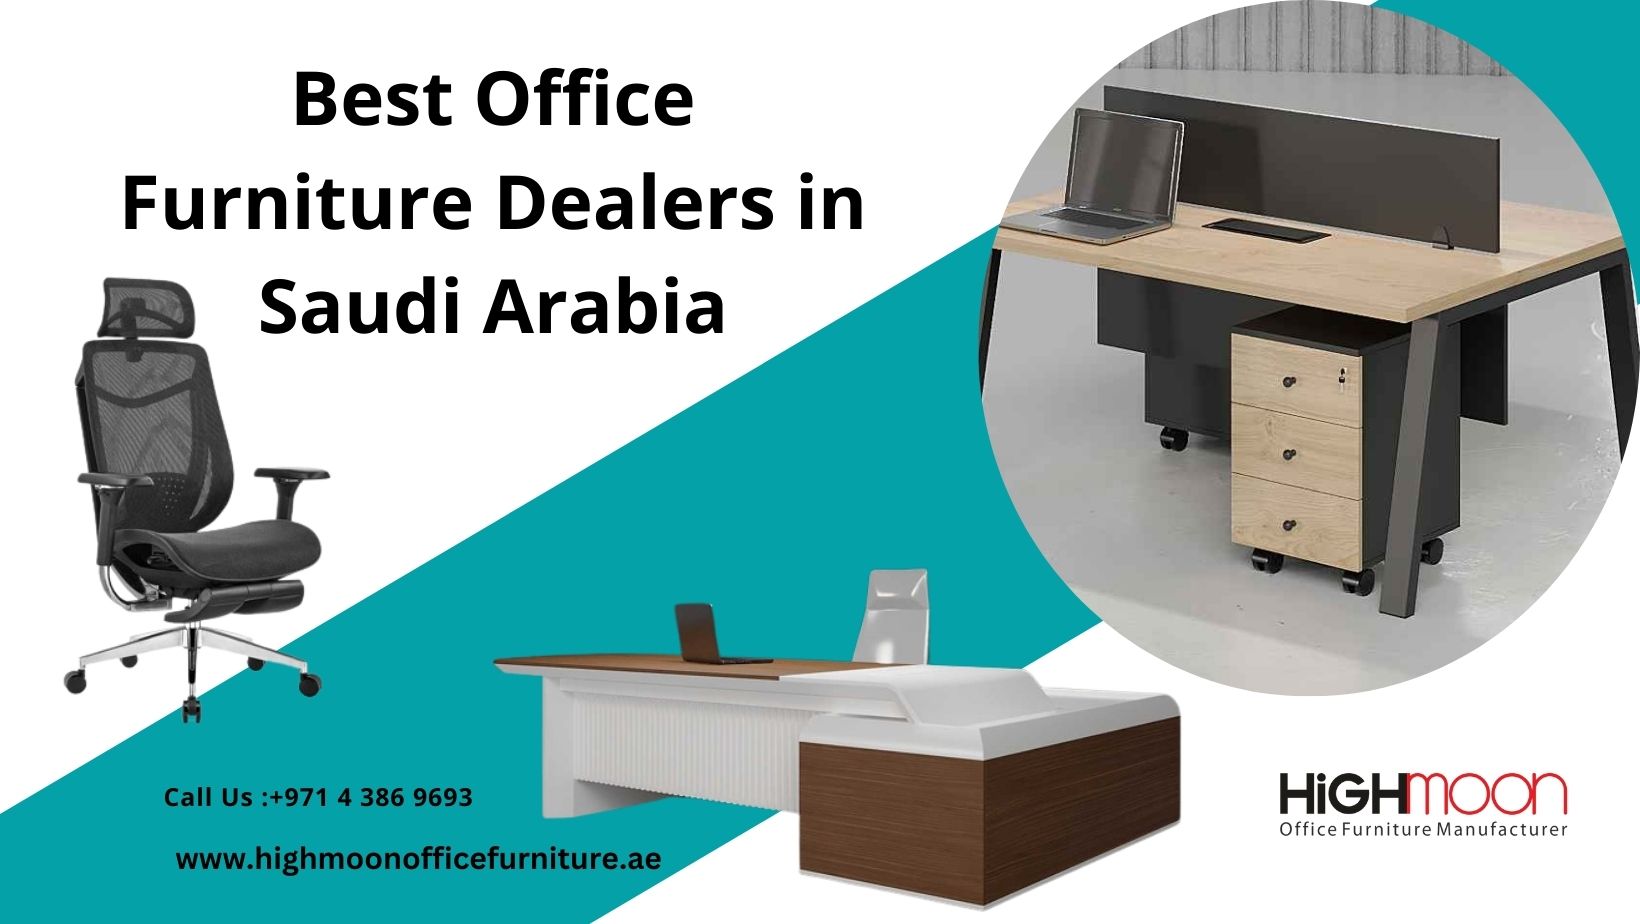 Best Office Furniture Dealers in Saudi Arabia